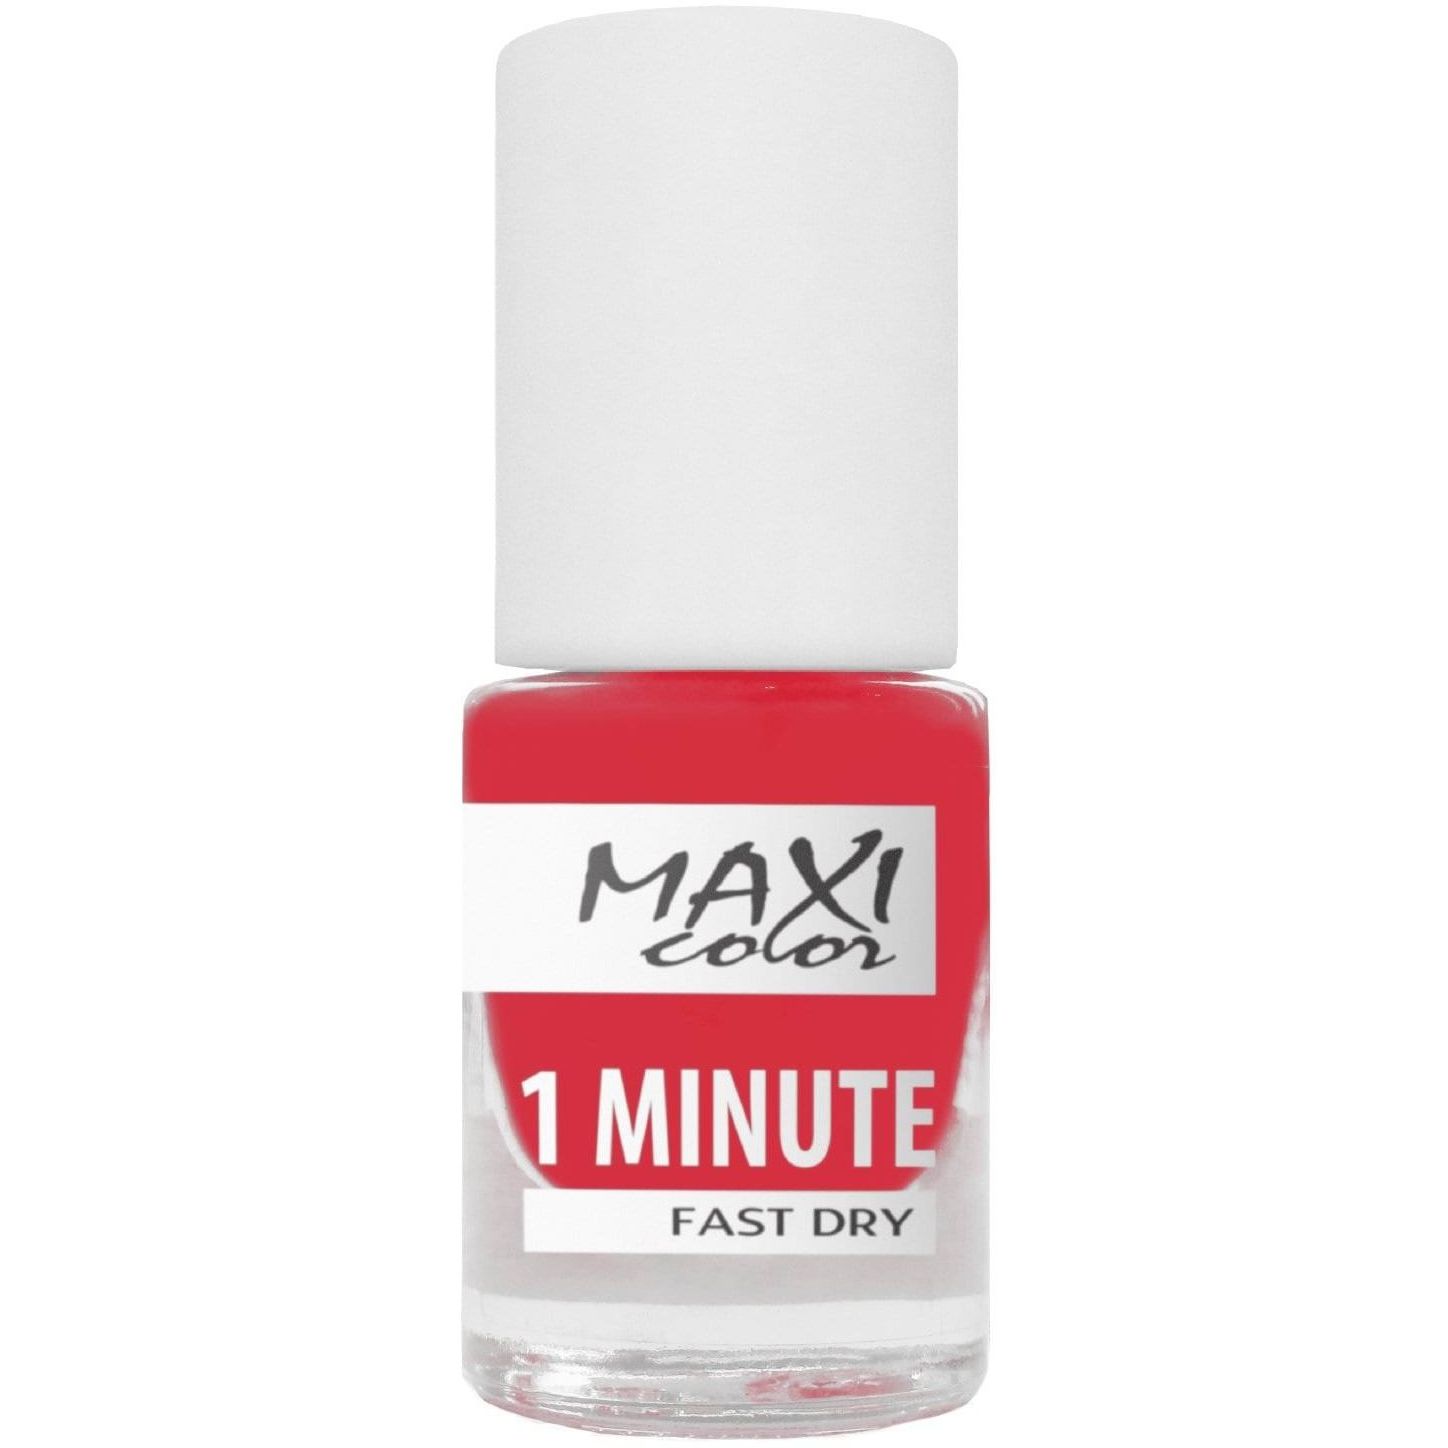 Лак для нігтів Maxi Color 1 Minute Fast Dry відтінок 036, 6 мл - фото 1